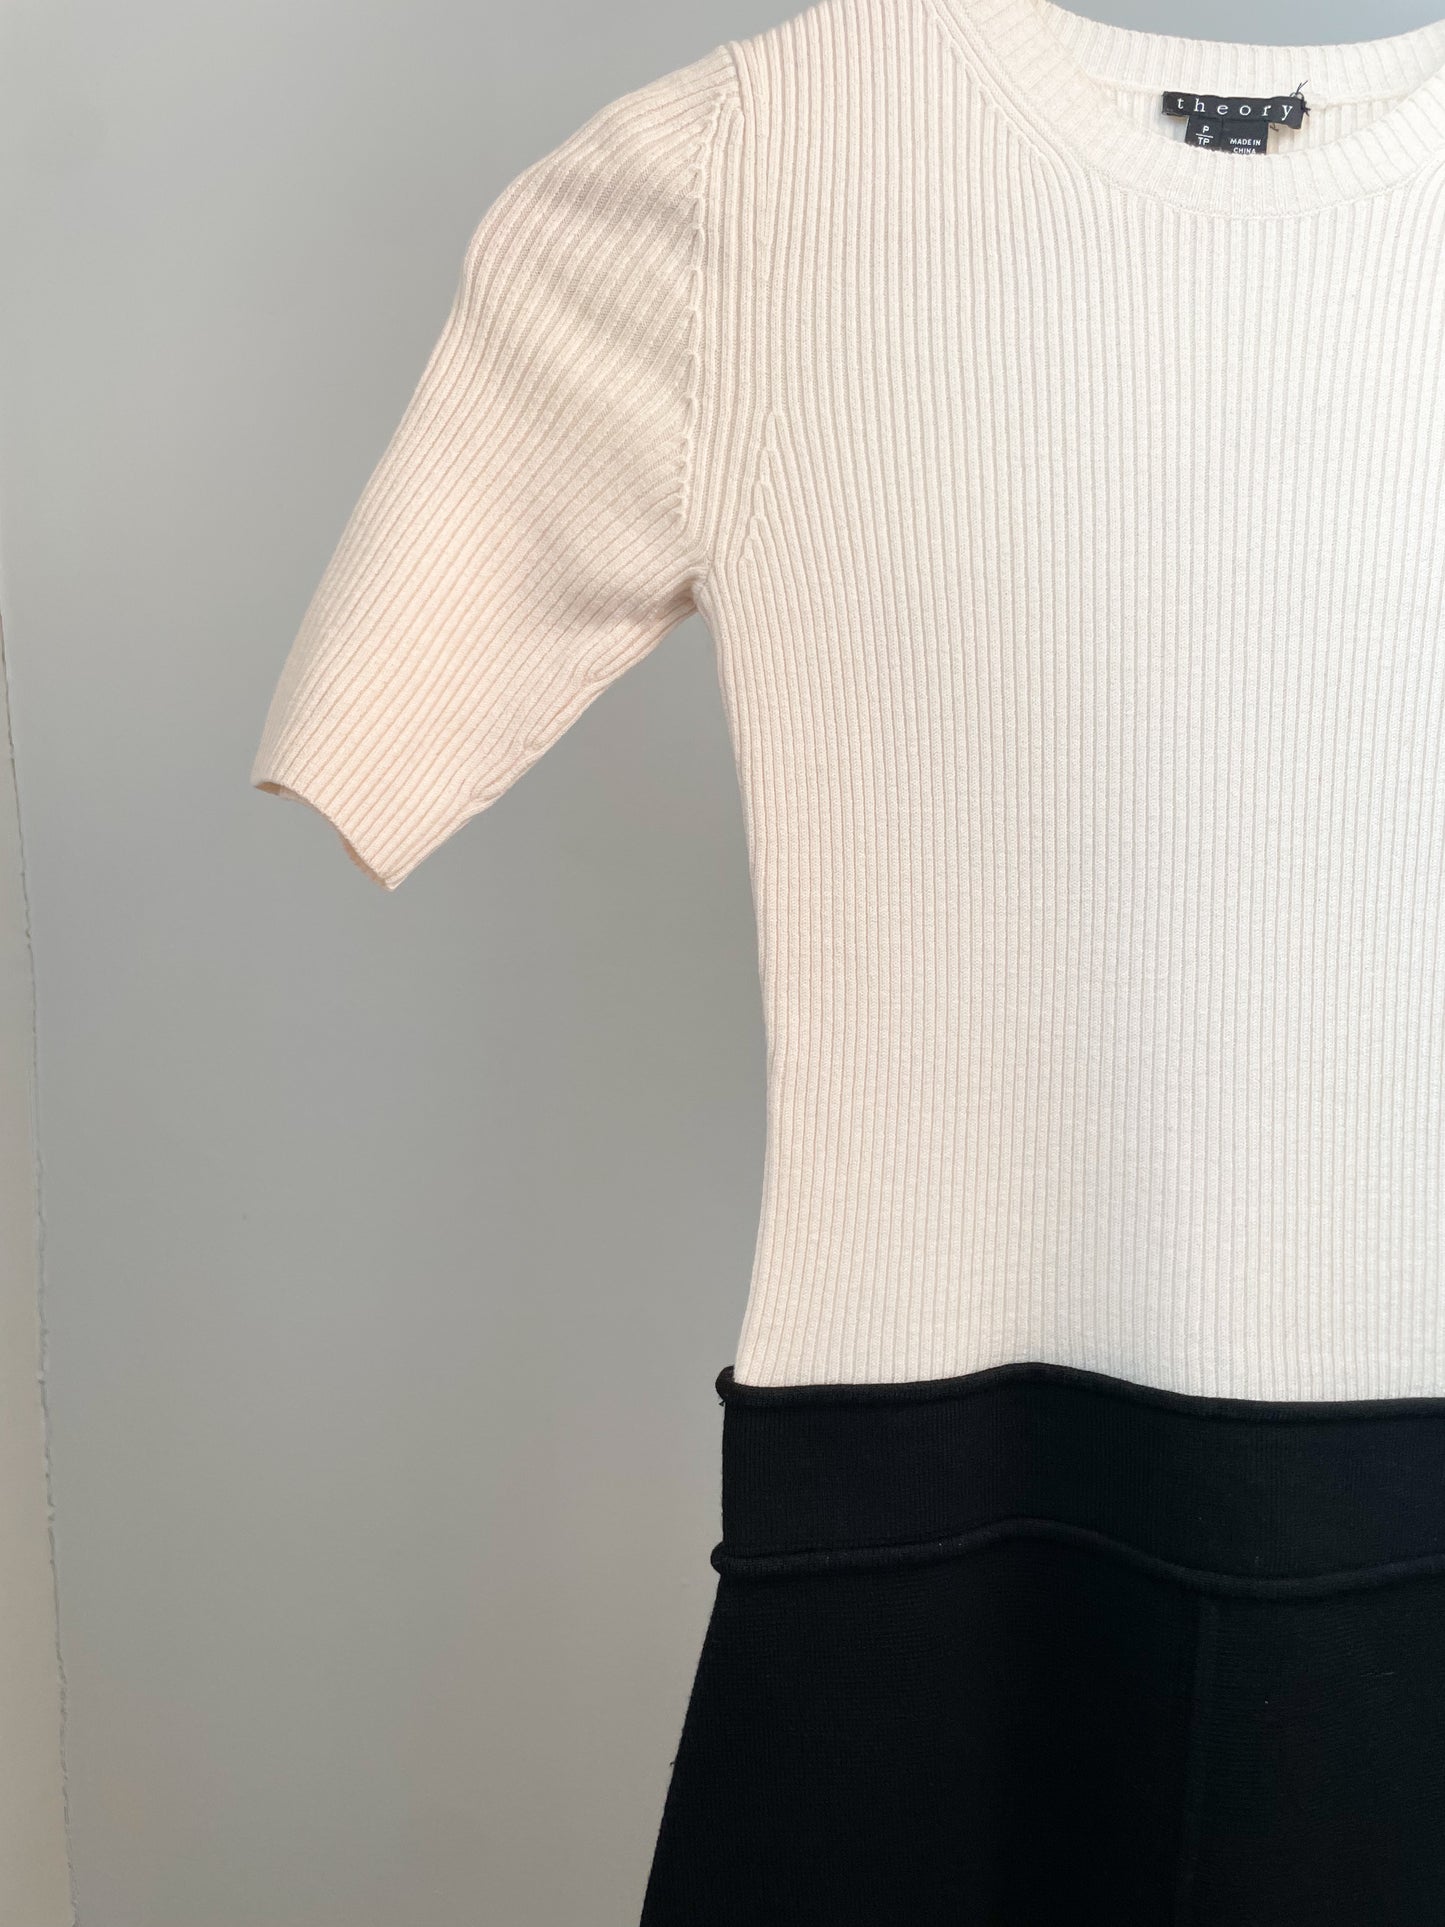 Theory White Black Wool Combo Knit Dress - XS